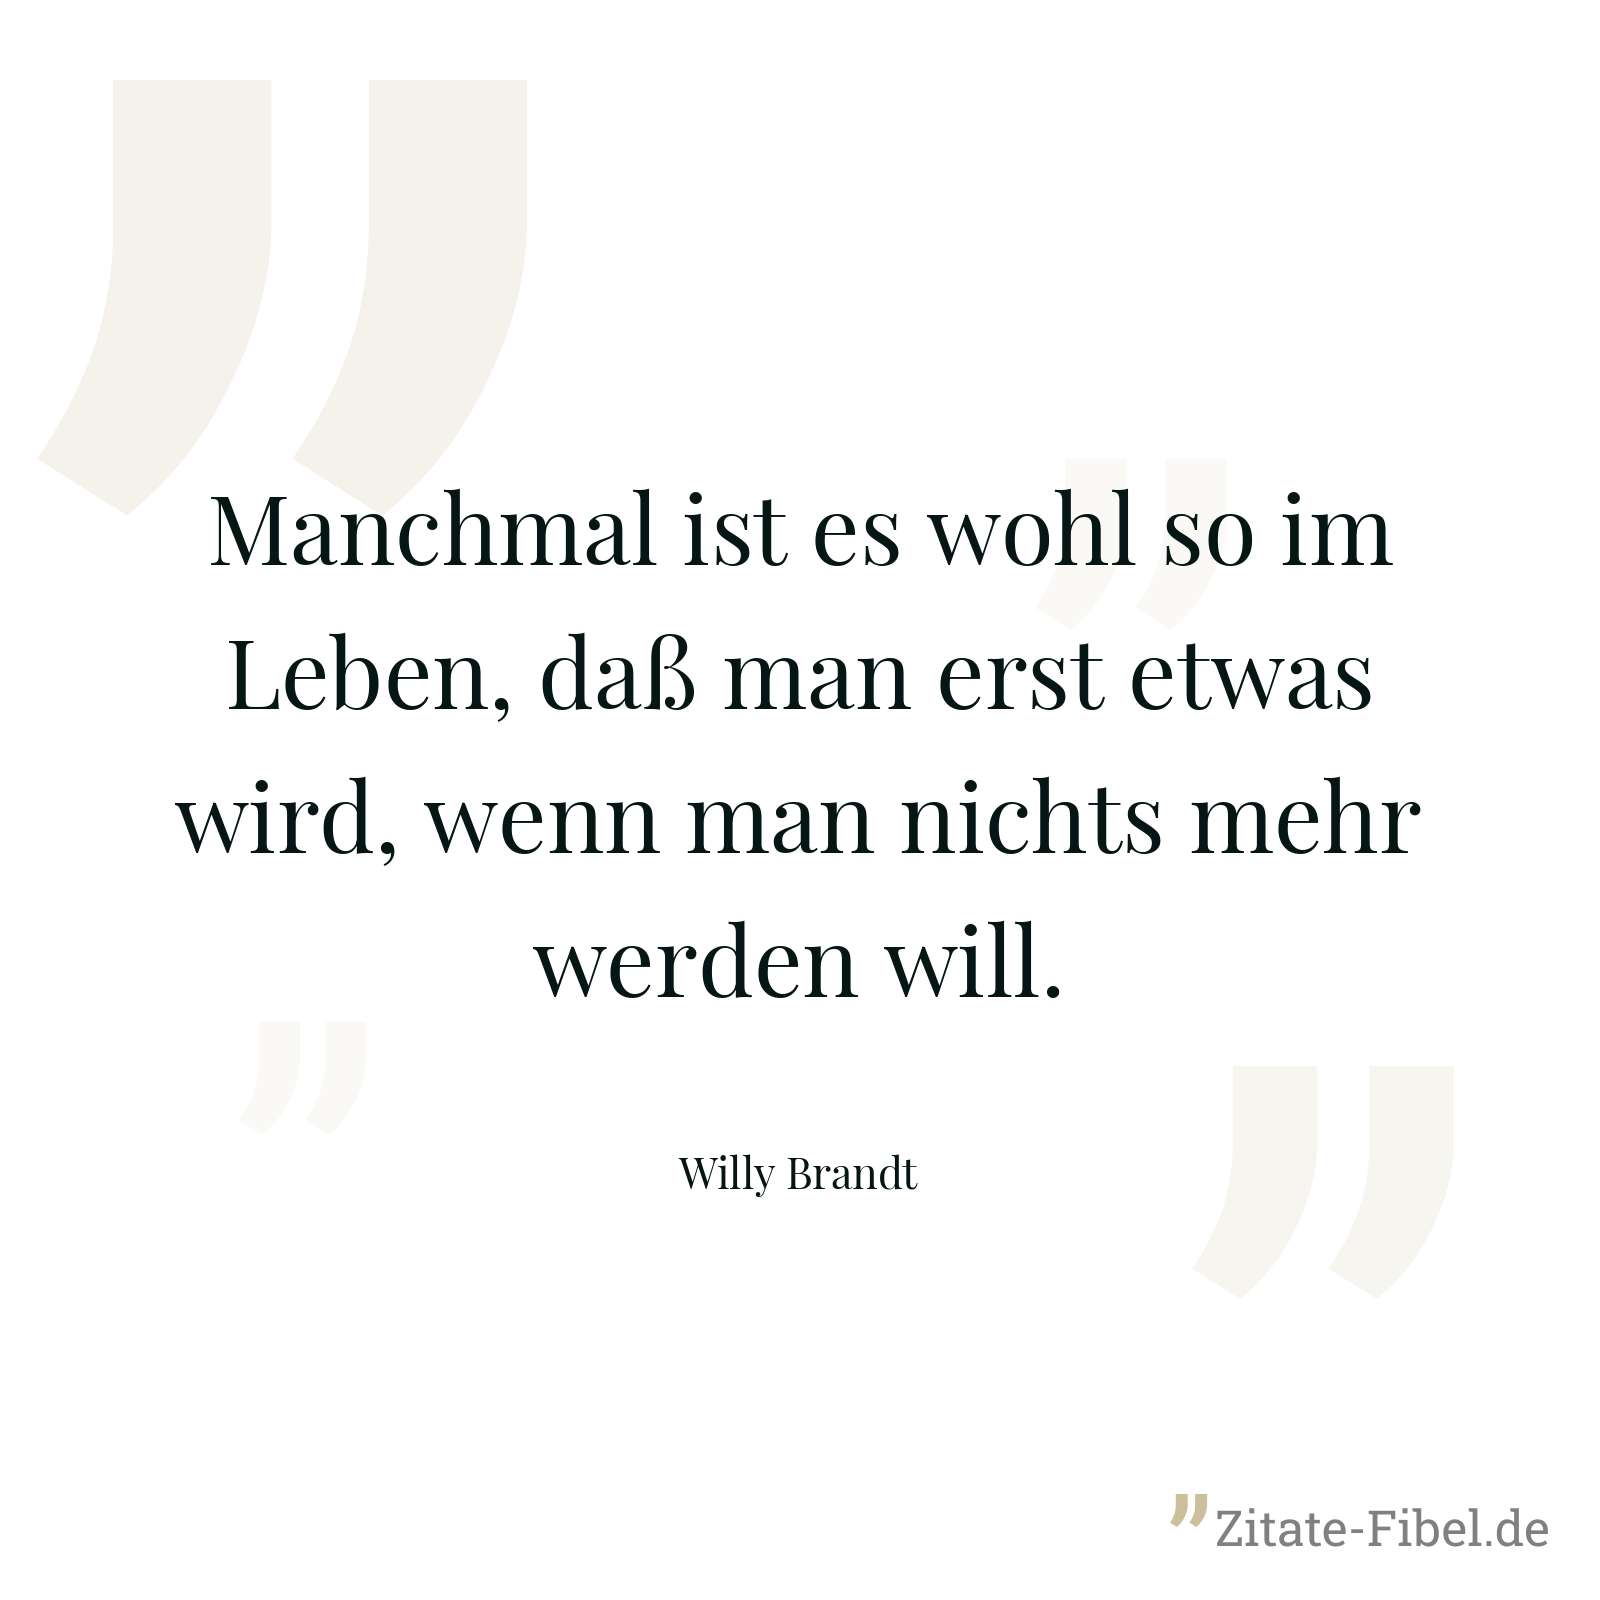 Manchmal ist es wohl so im Leben, daß man erst etwas wird, wenn man nichts mehr werden will. - Willy Brandt